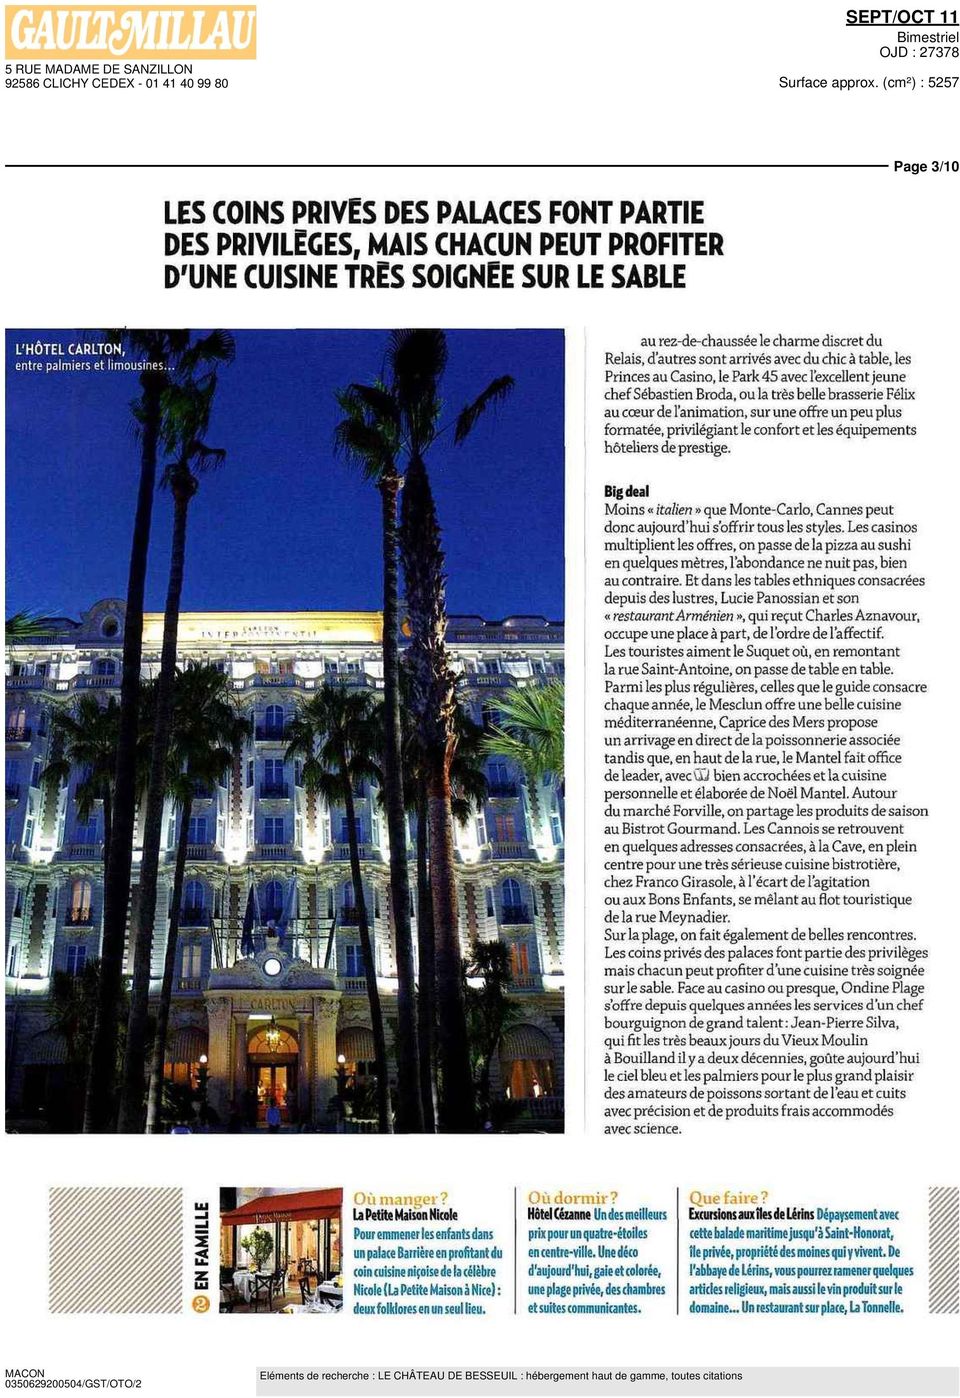 formatée, privilégiant le confort et les équipements hôteliers de prestige Bigdeal Moins «italien» que Monte Carlo, Cannes peut donc aujourd'hui s'offrir tous les styles Les casinos multiplient les